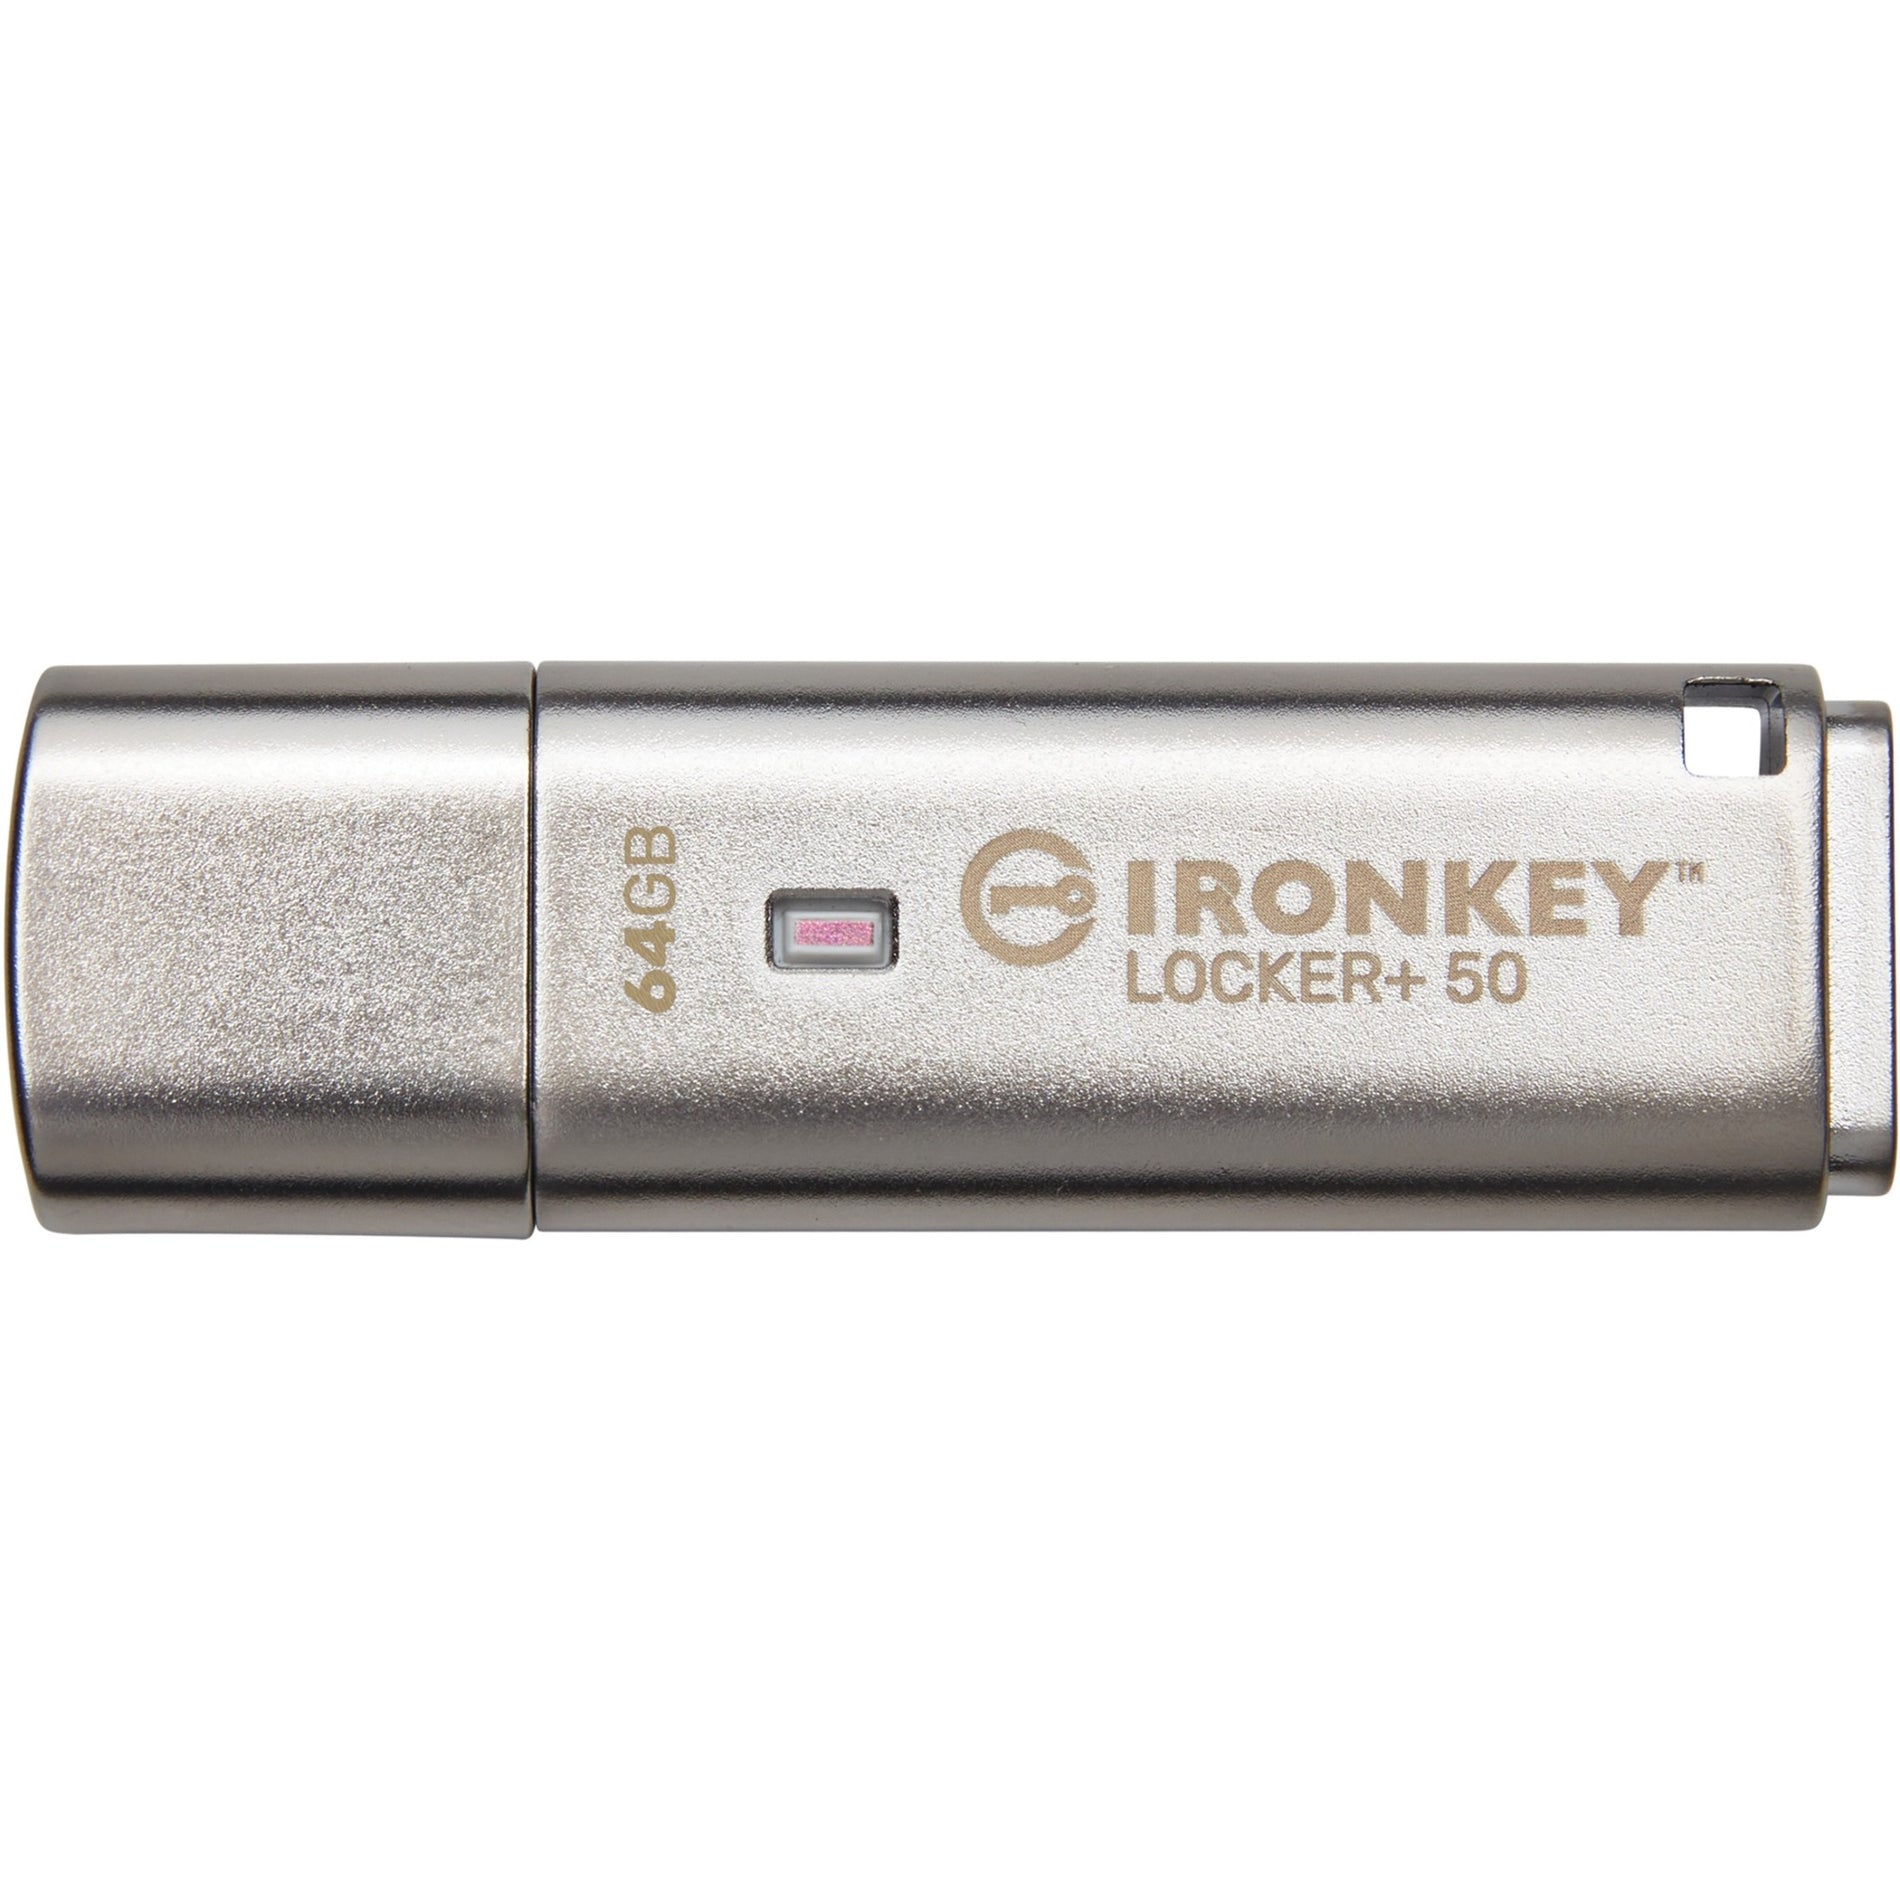 IronKey Locker+ 50 USB Flash Drive (IKLP50/64GB)